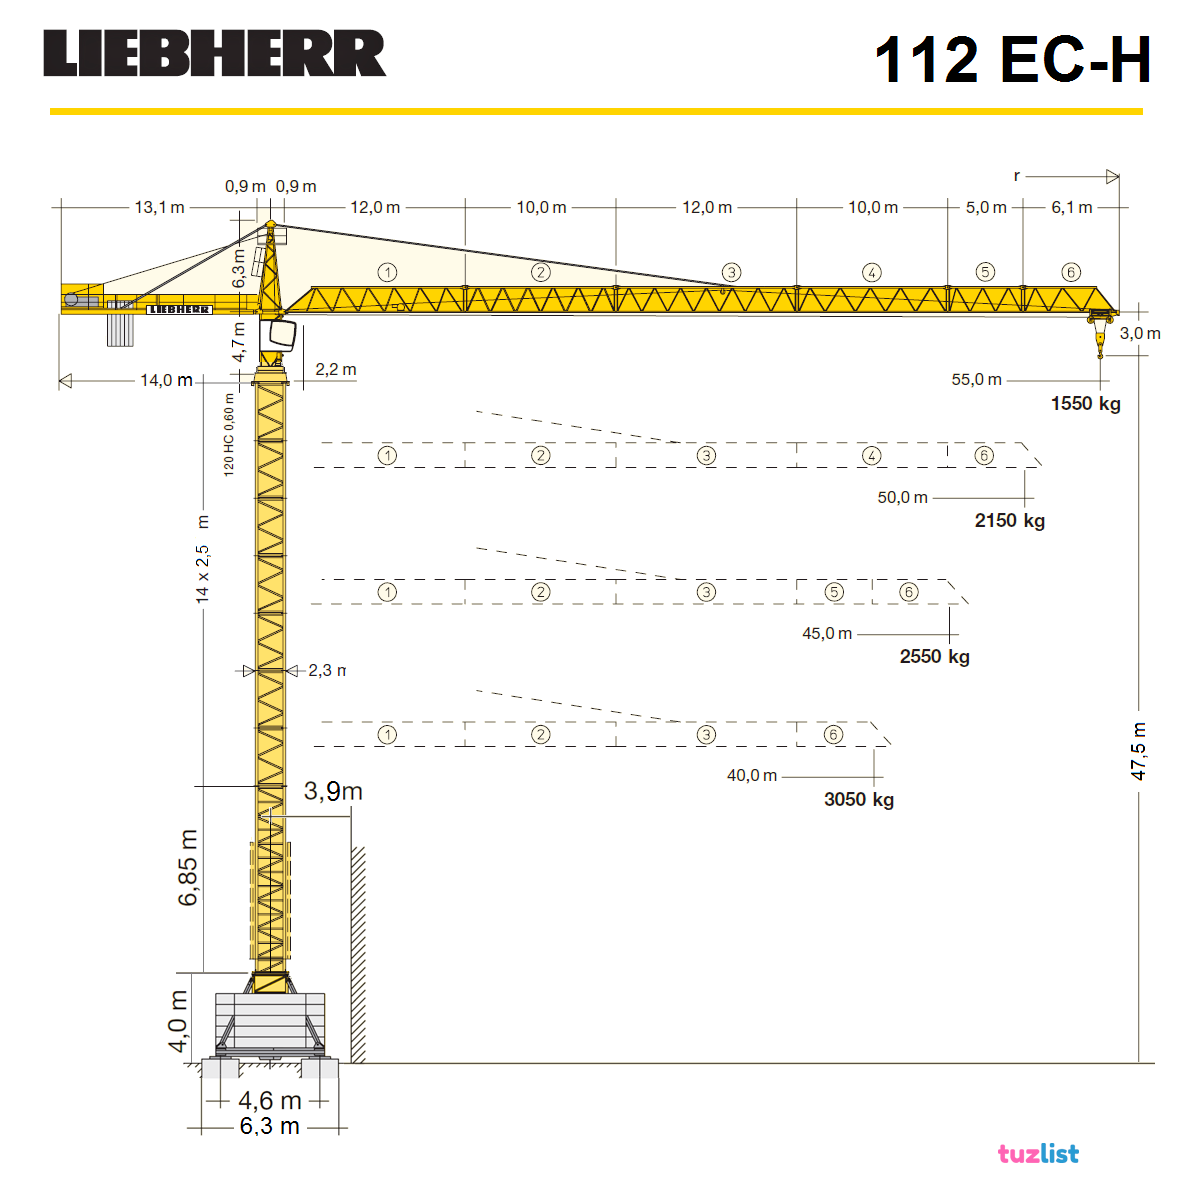 Кран башенный liebherr 132 ec h8 технические характеристики: аренда башенного крана liebherr 132 ec-h8 с оголовком, грузоподъемность 8 тонн - турботехмастер - онлан-гипермаркет